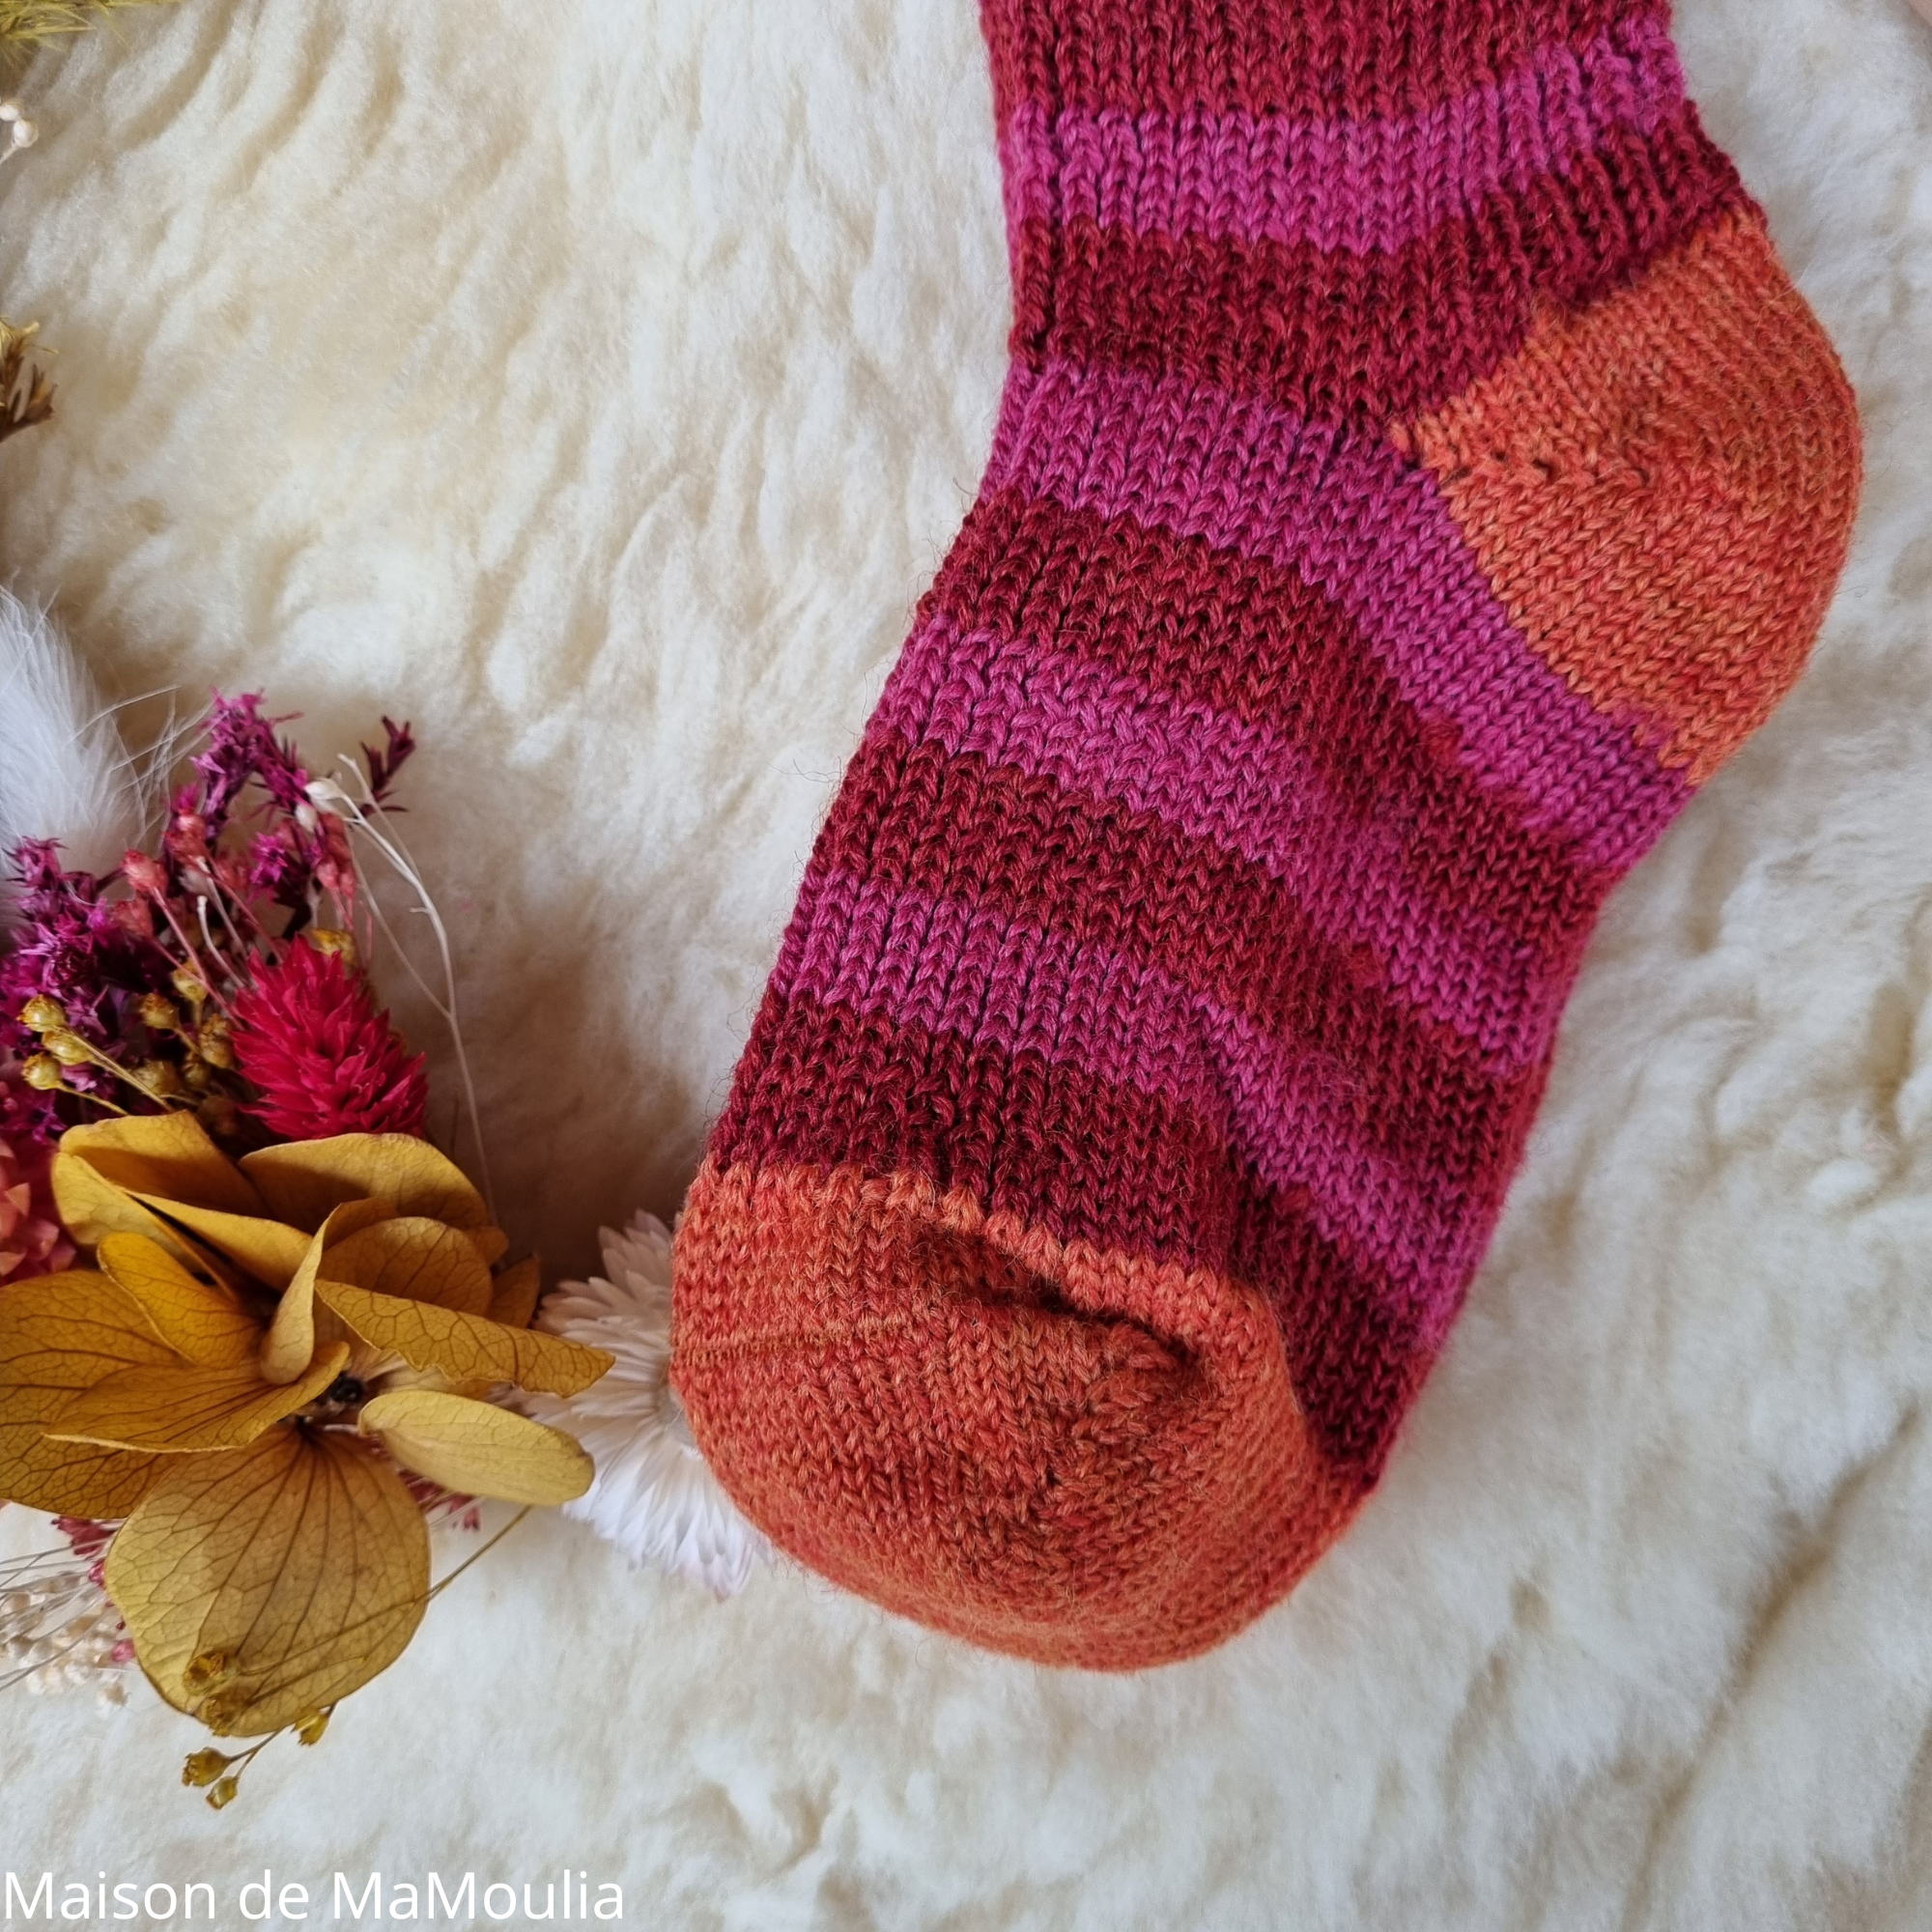 015-chaussettes-chaudes-pure-laine-bio-ecologique-hirsch-natur-bebe-enfant-maison-de-mamoulia-tres-epaisses-rayures-rose-orange